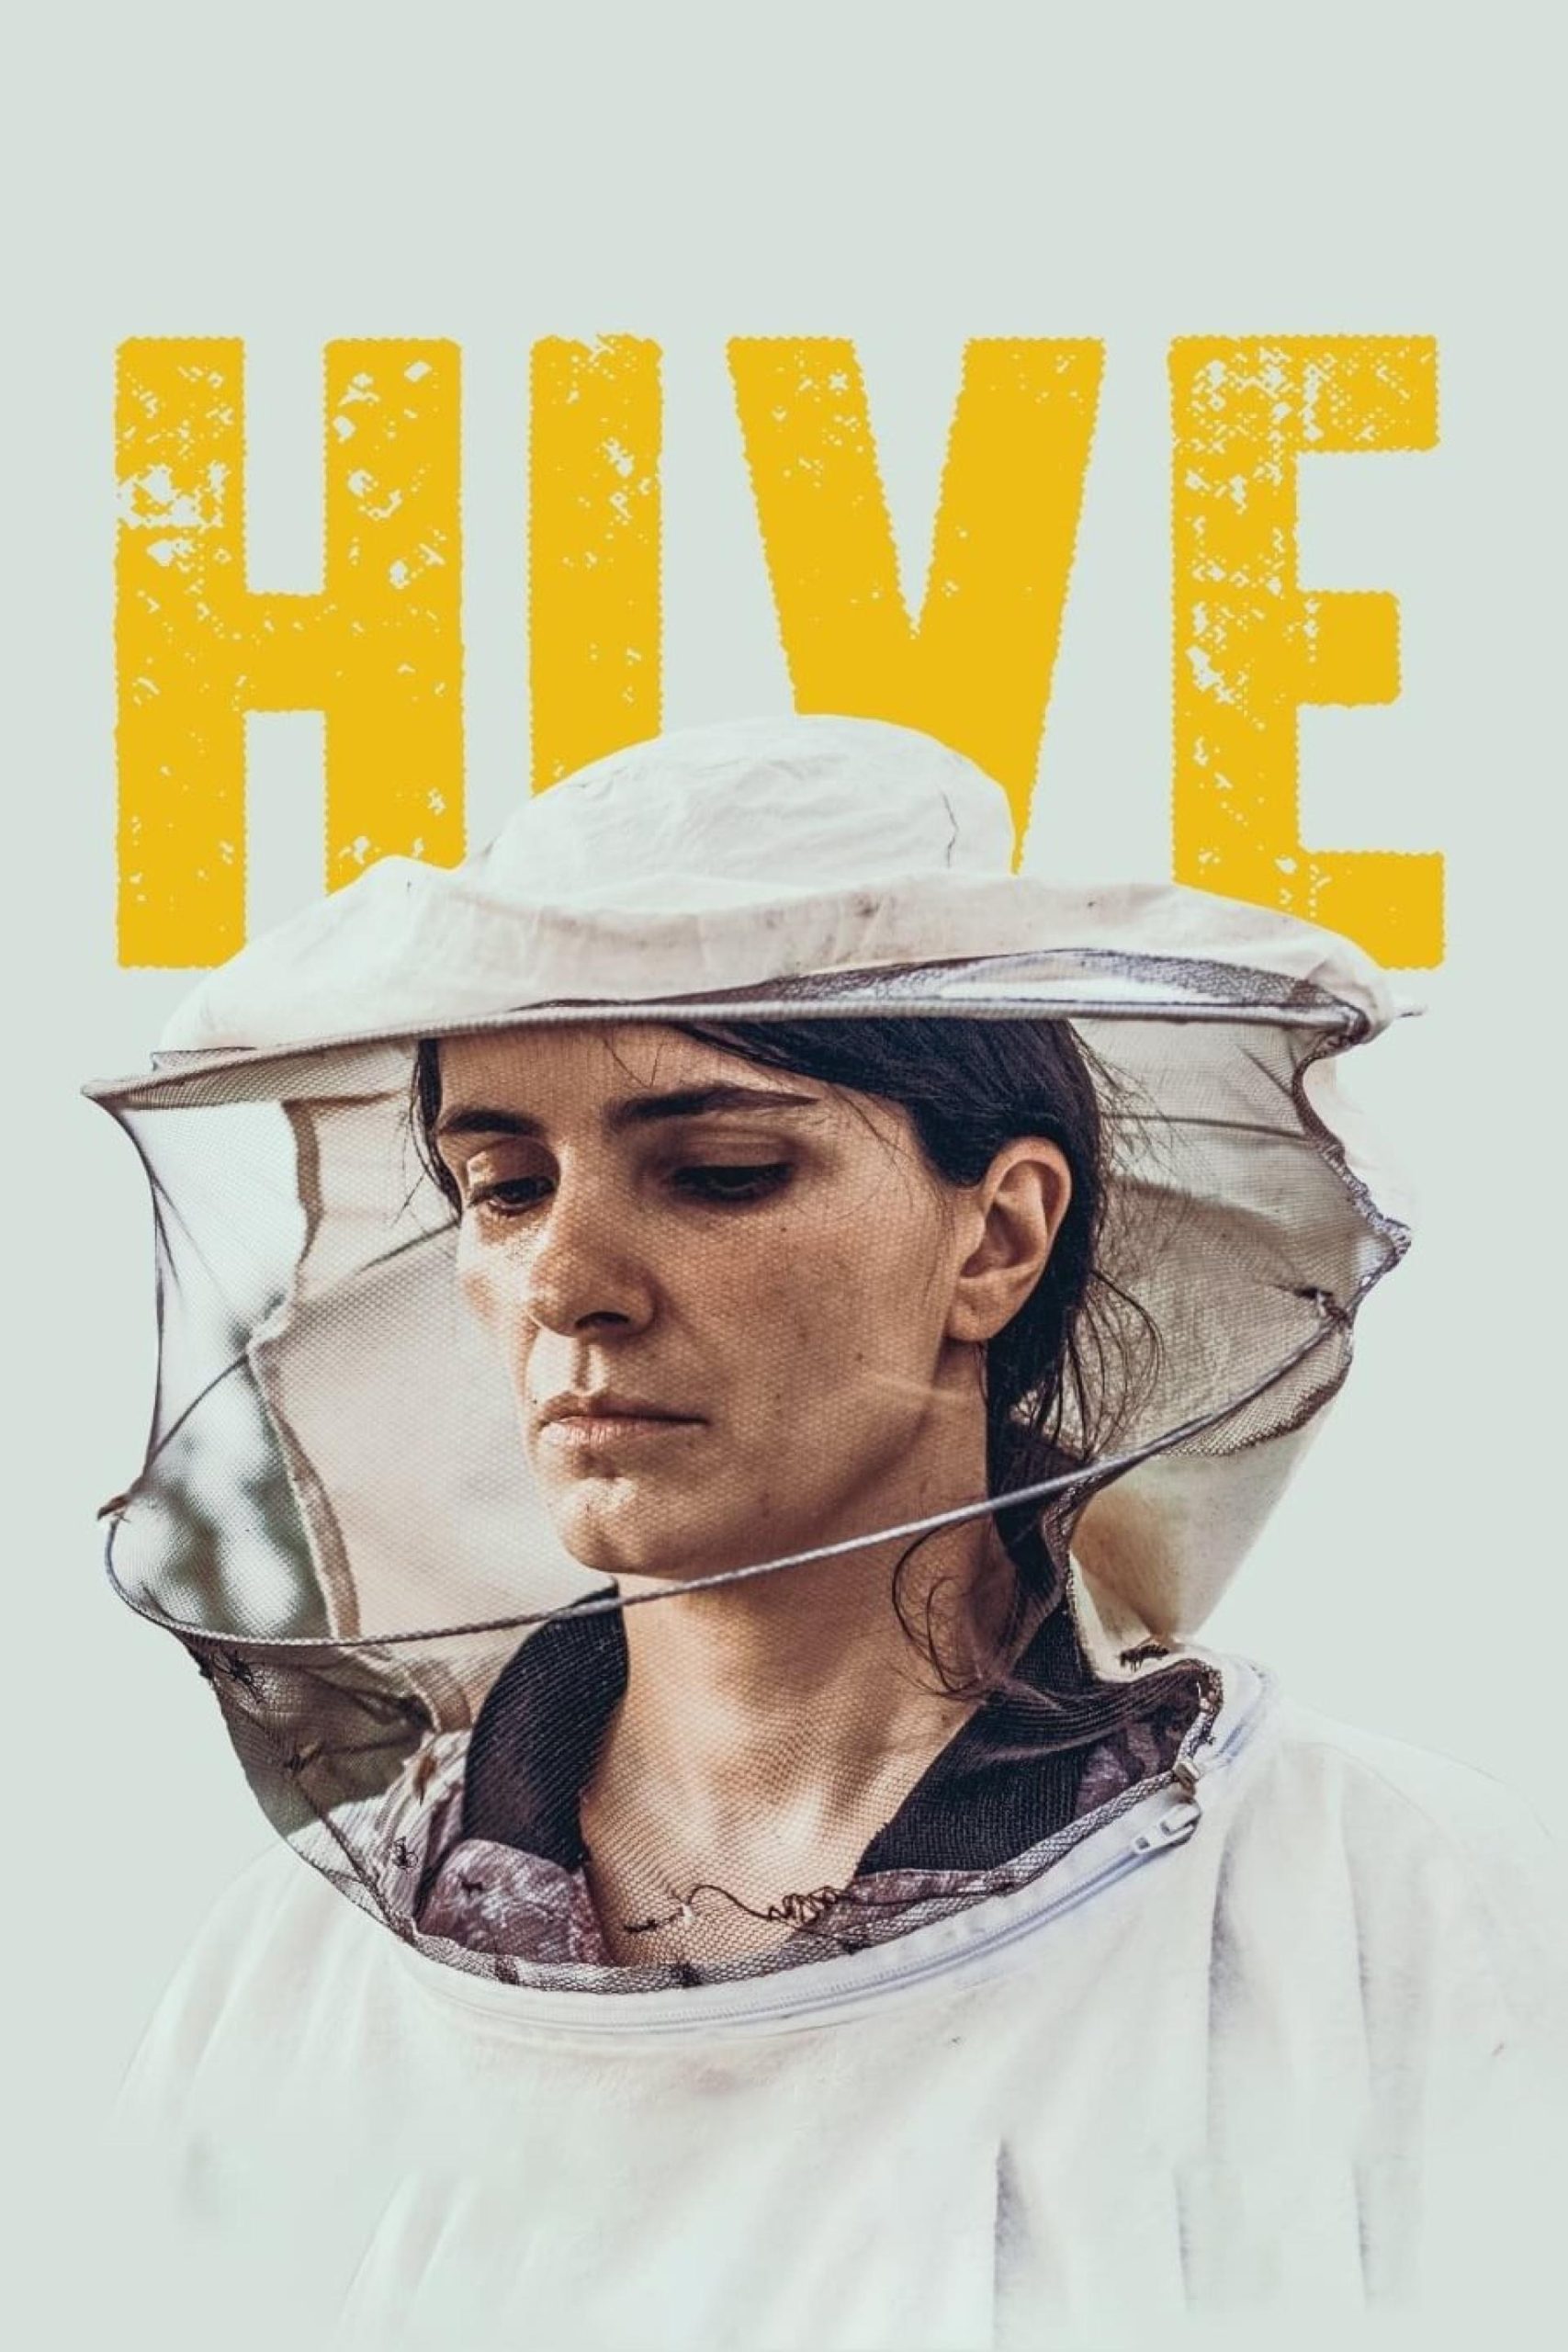 دانلود فیلم Hive 2021